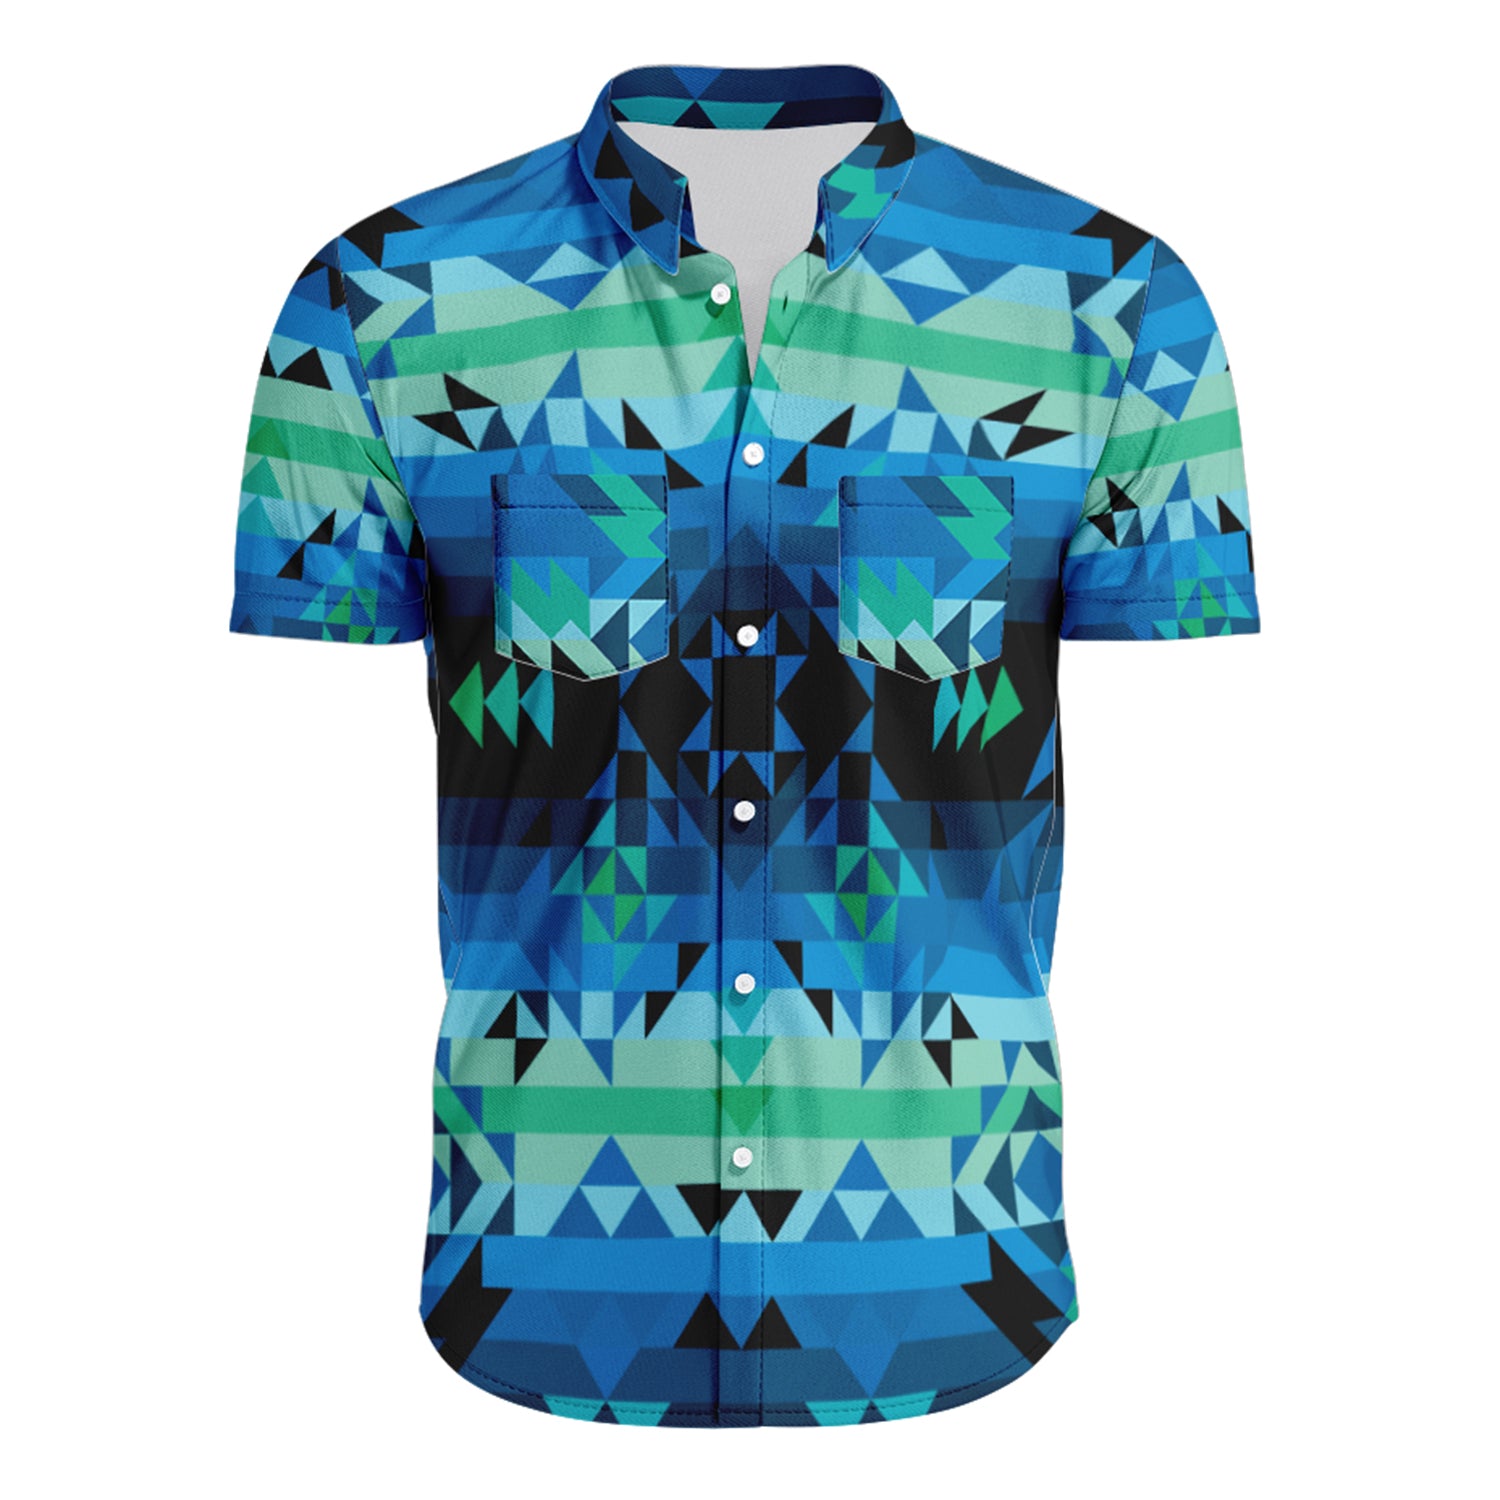 Green Star Hawaiian-Style Button Up Shirt